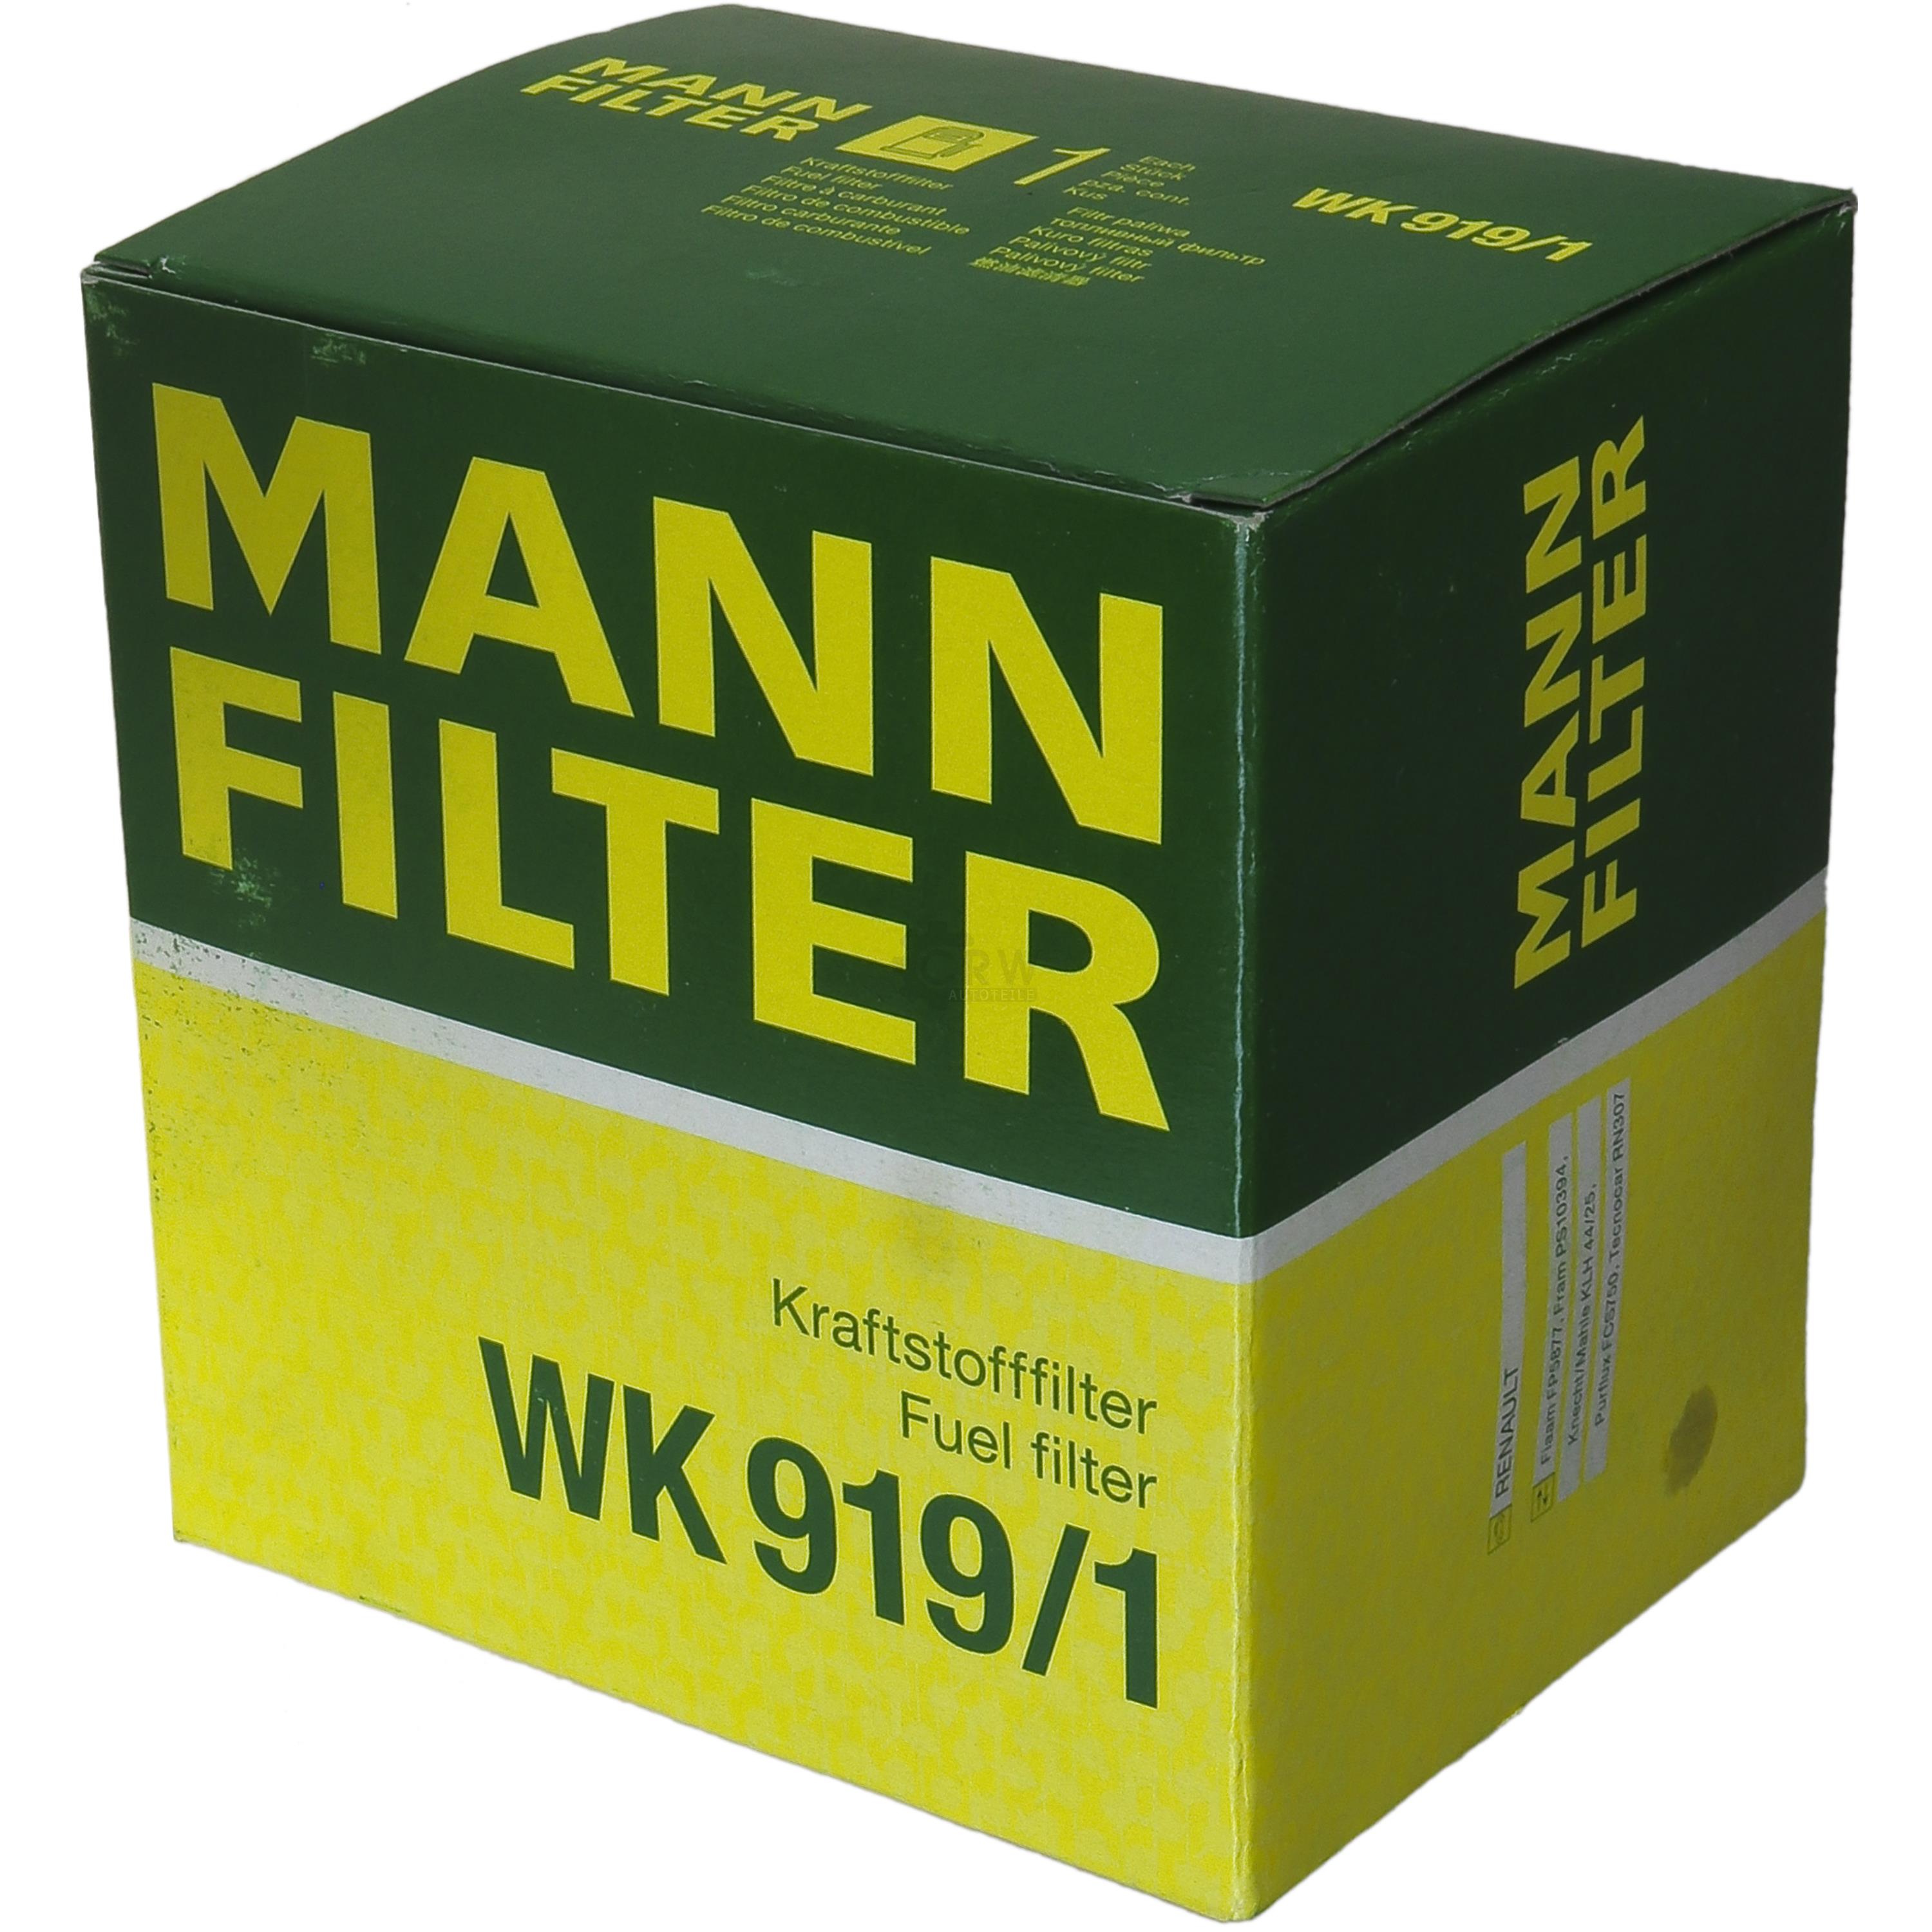 MANN-FILTER Kraftstofffilter WK 919/1 Fuel Filter